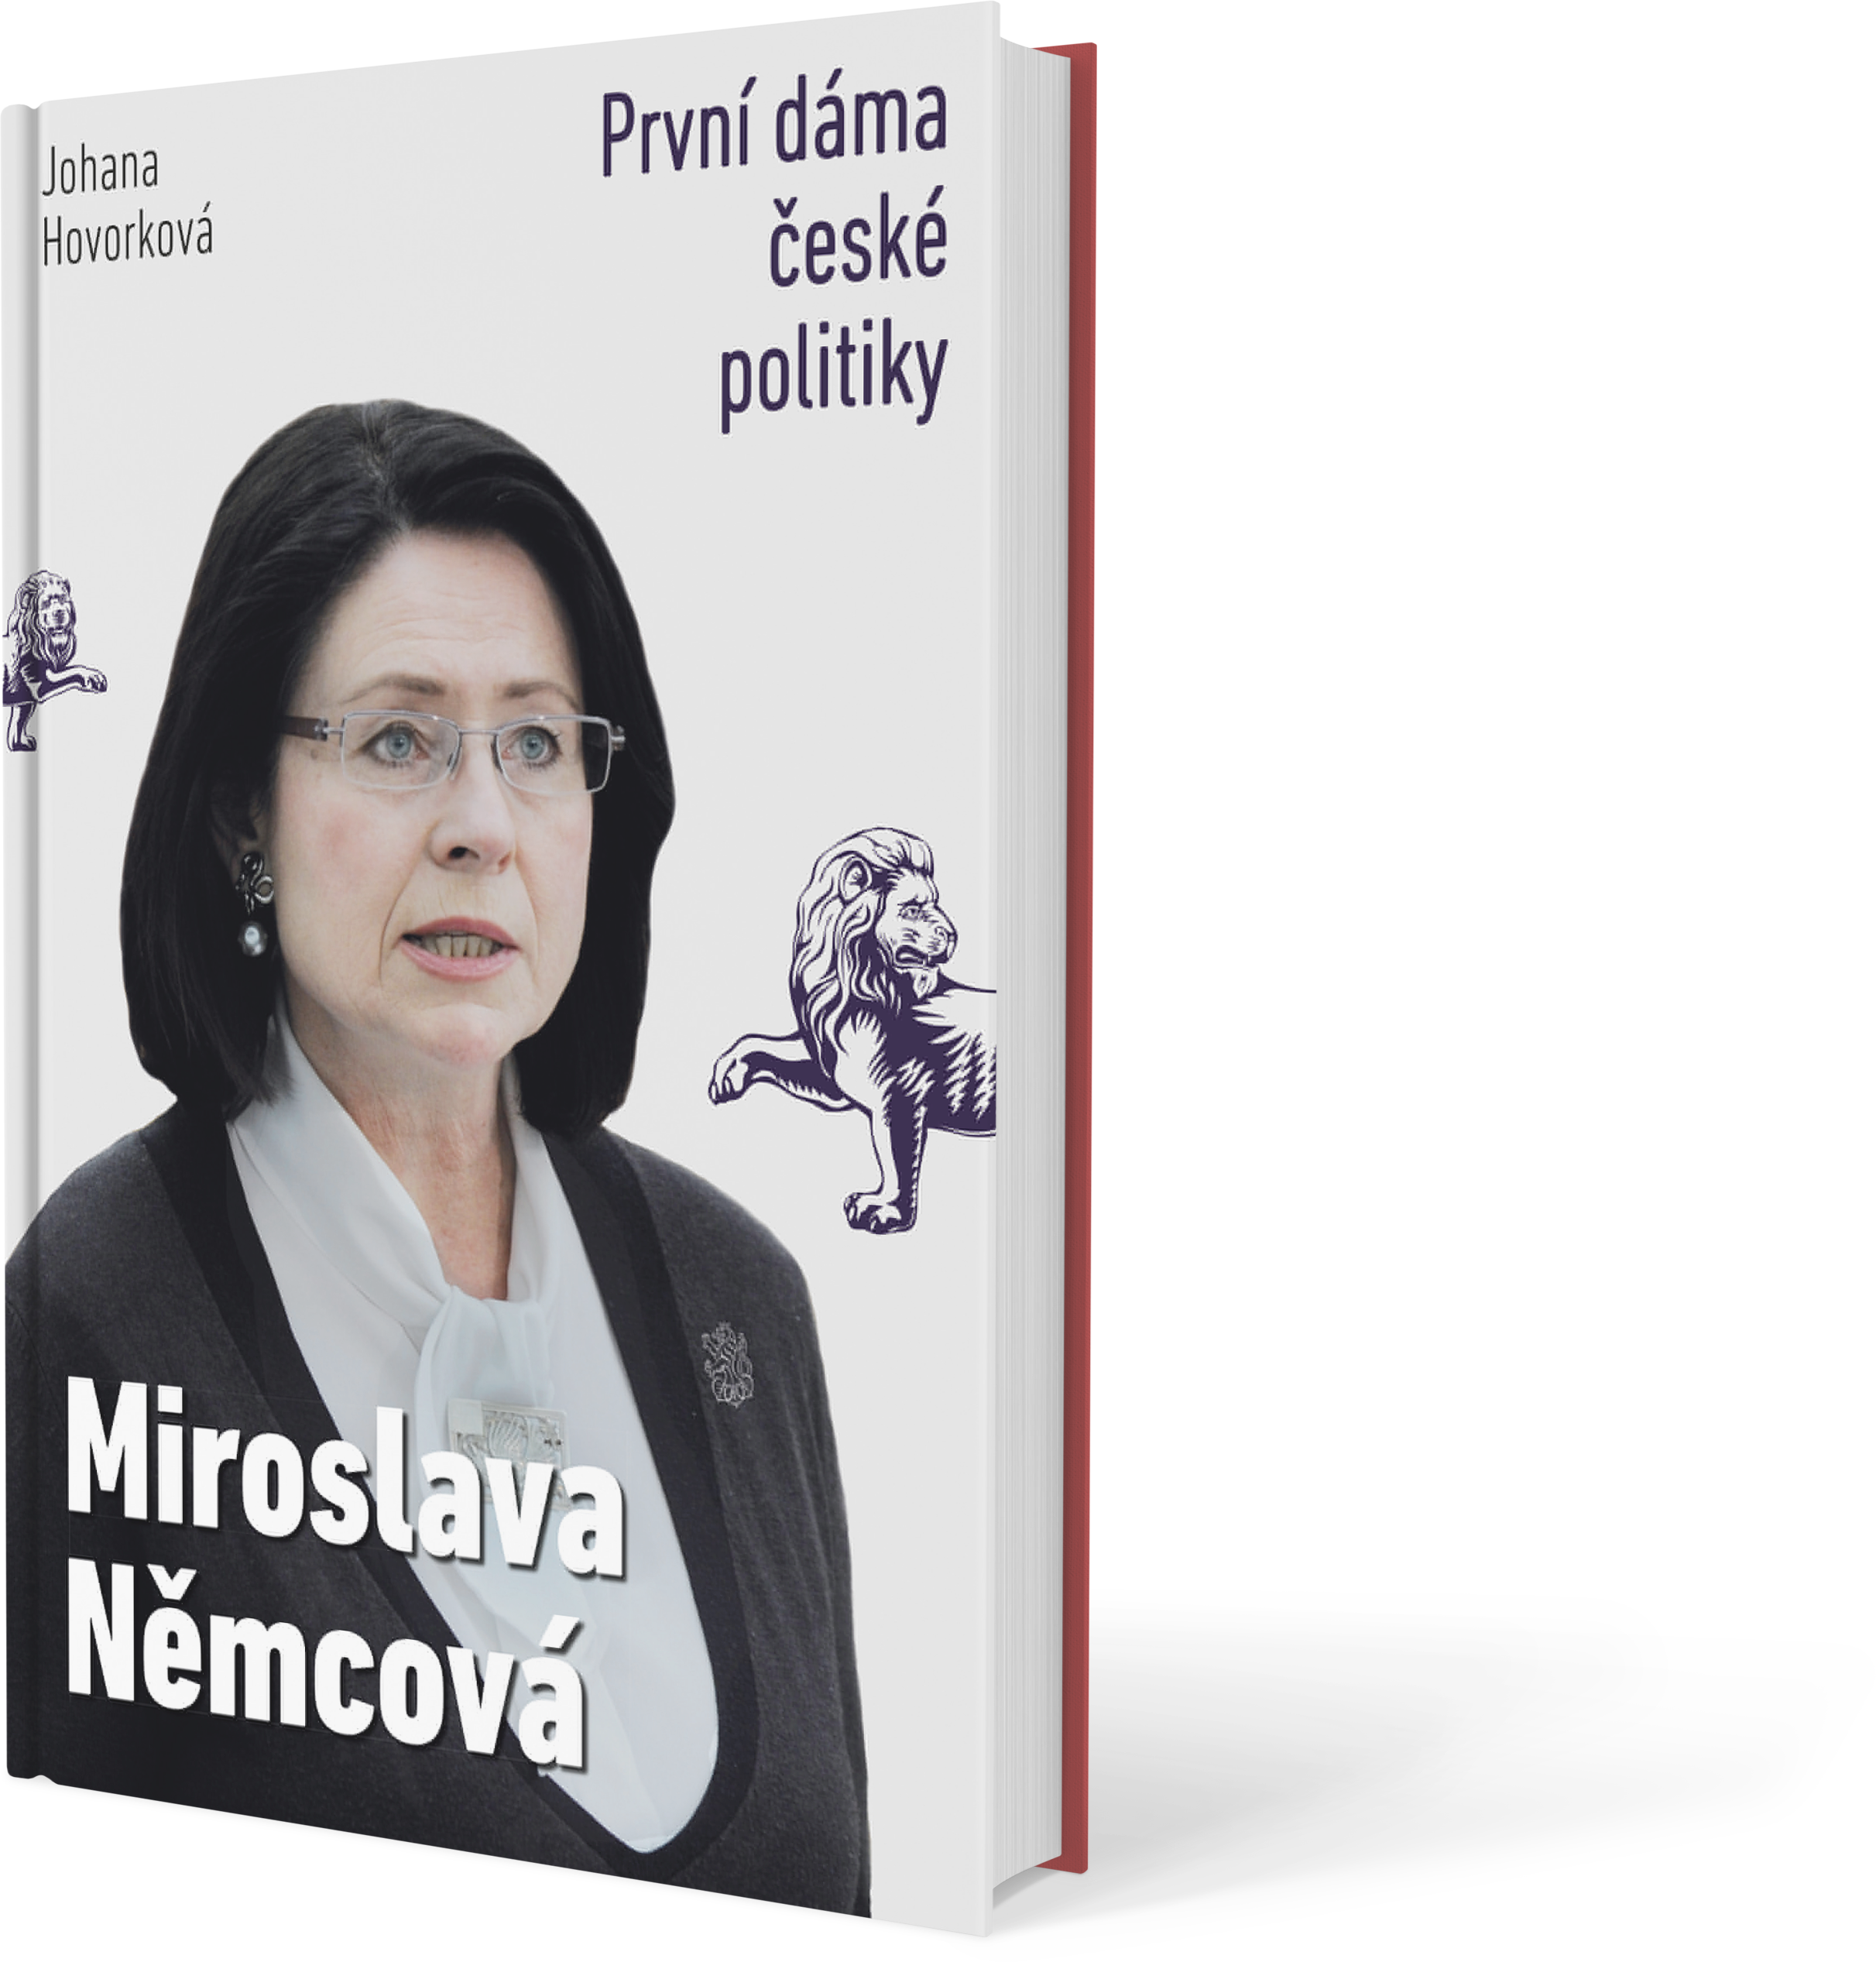 Náhled knihy Miroslava Němcová – První dáma České politiky